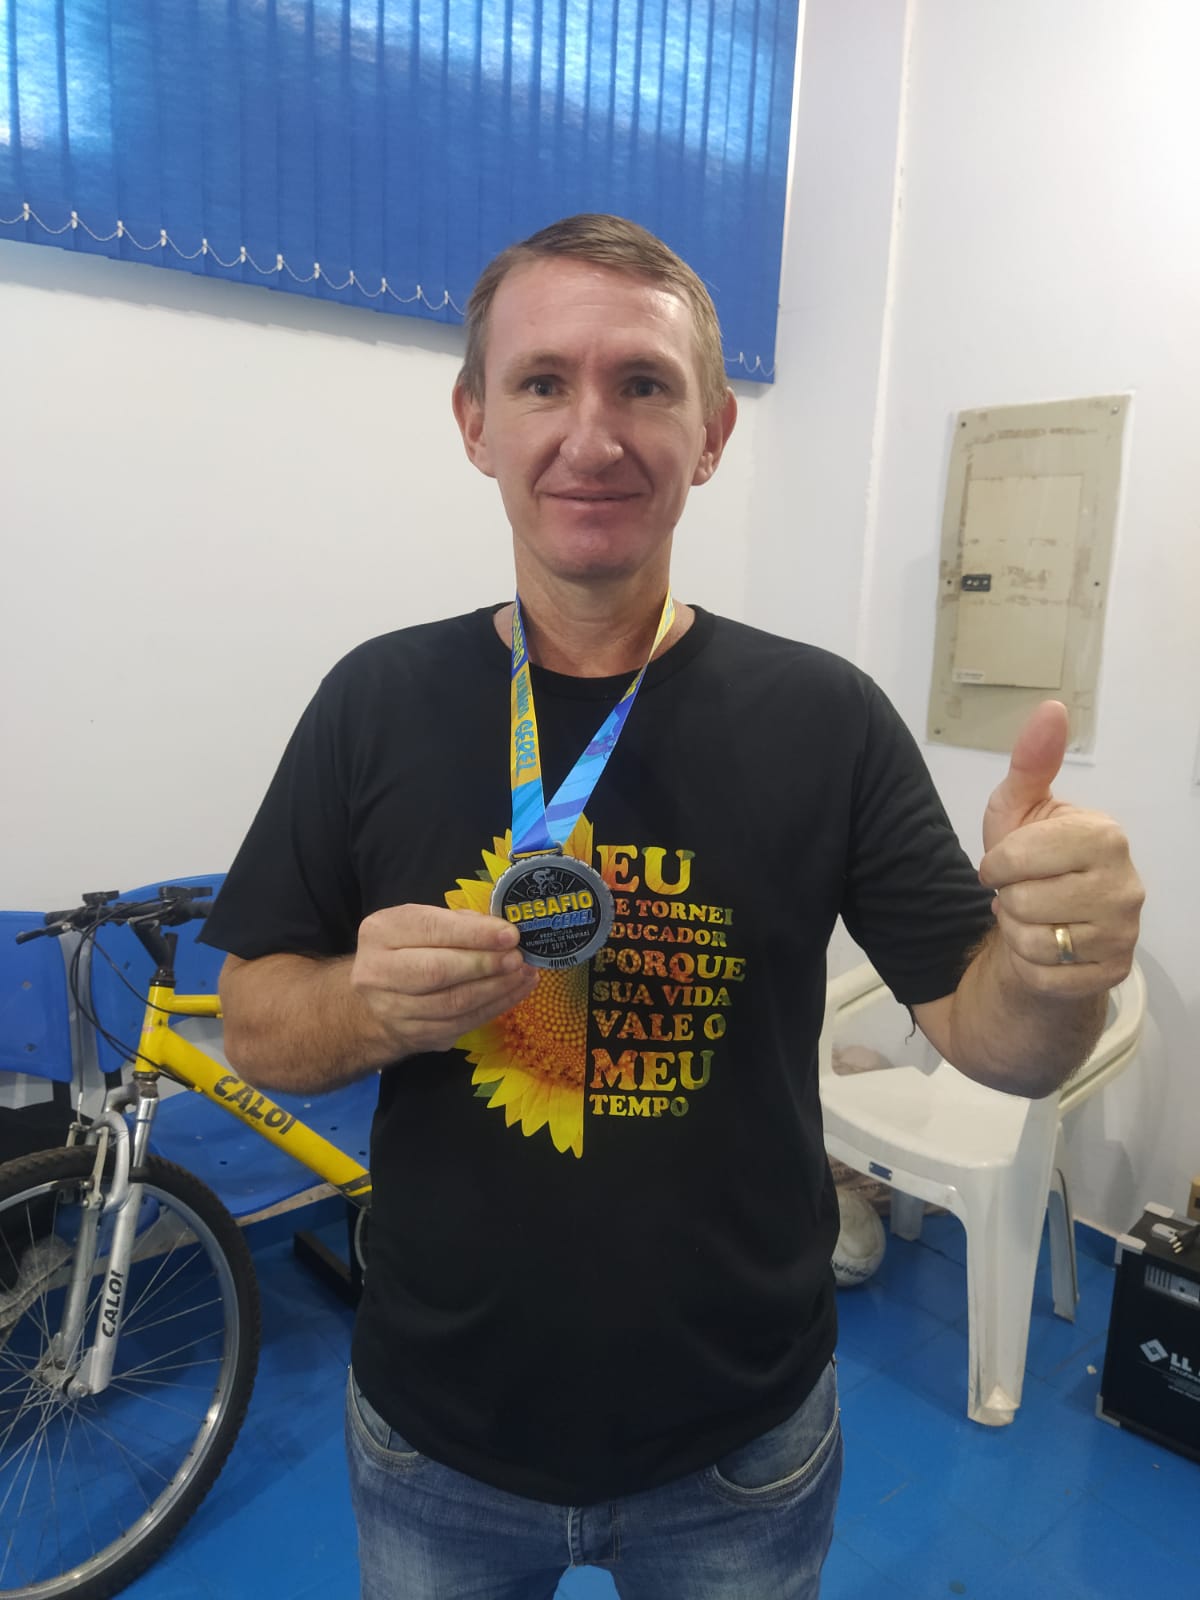 Imagem: Gerel entrega medalhas aos ciclistas que concluíram o 1º Desafio Virtual Solidário, 2021 - Assessoria de Imprensa